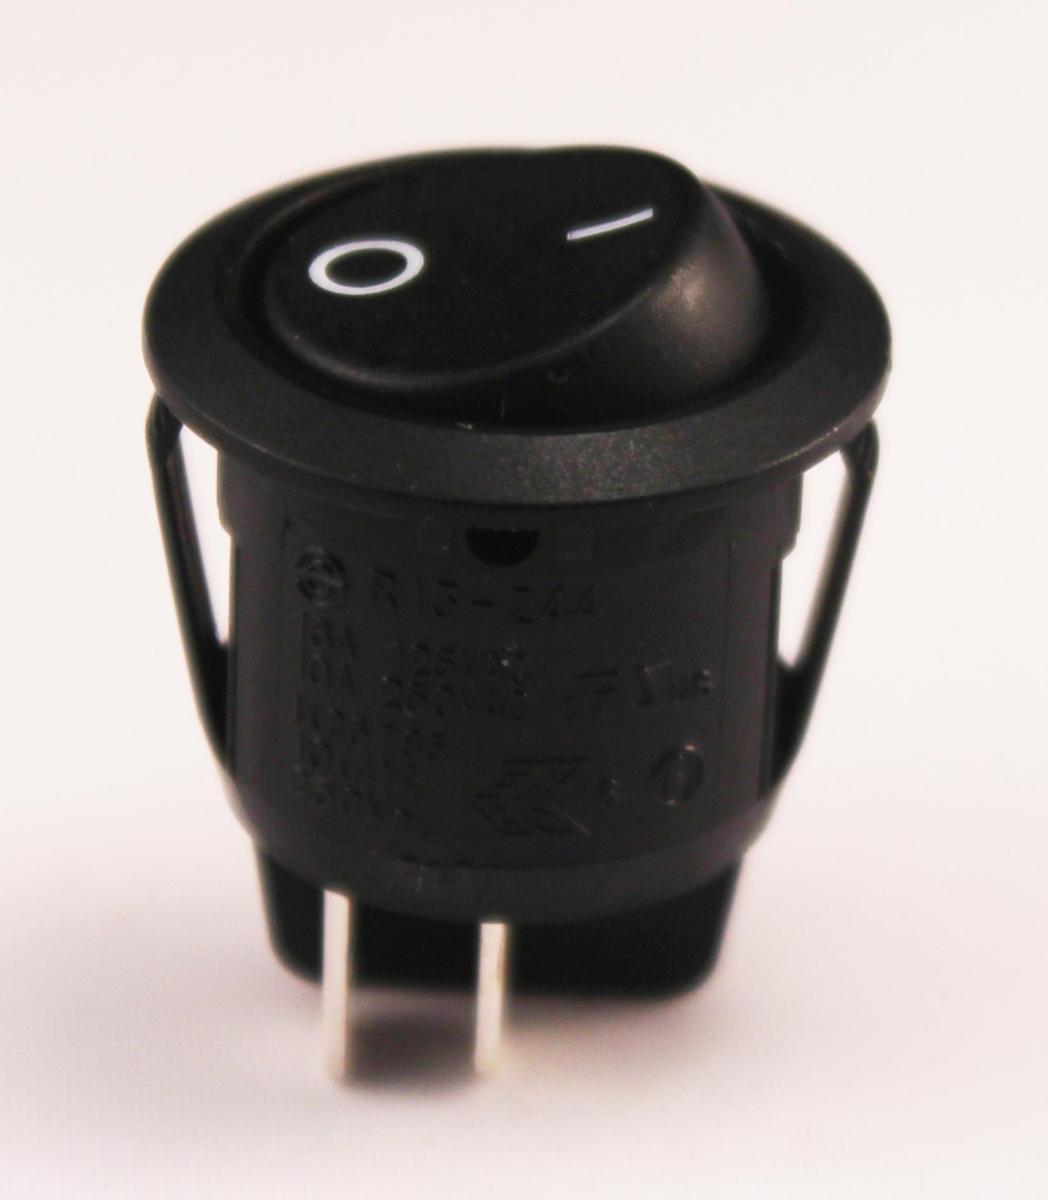 Mini interrupteur à bascule ON-OFF - Perçage ø 10 mm 